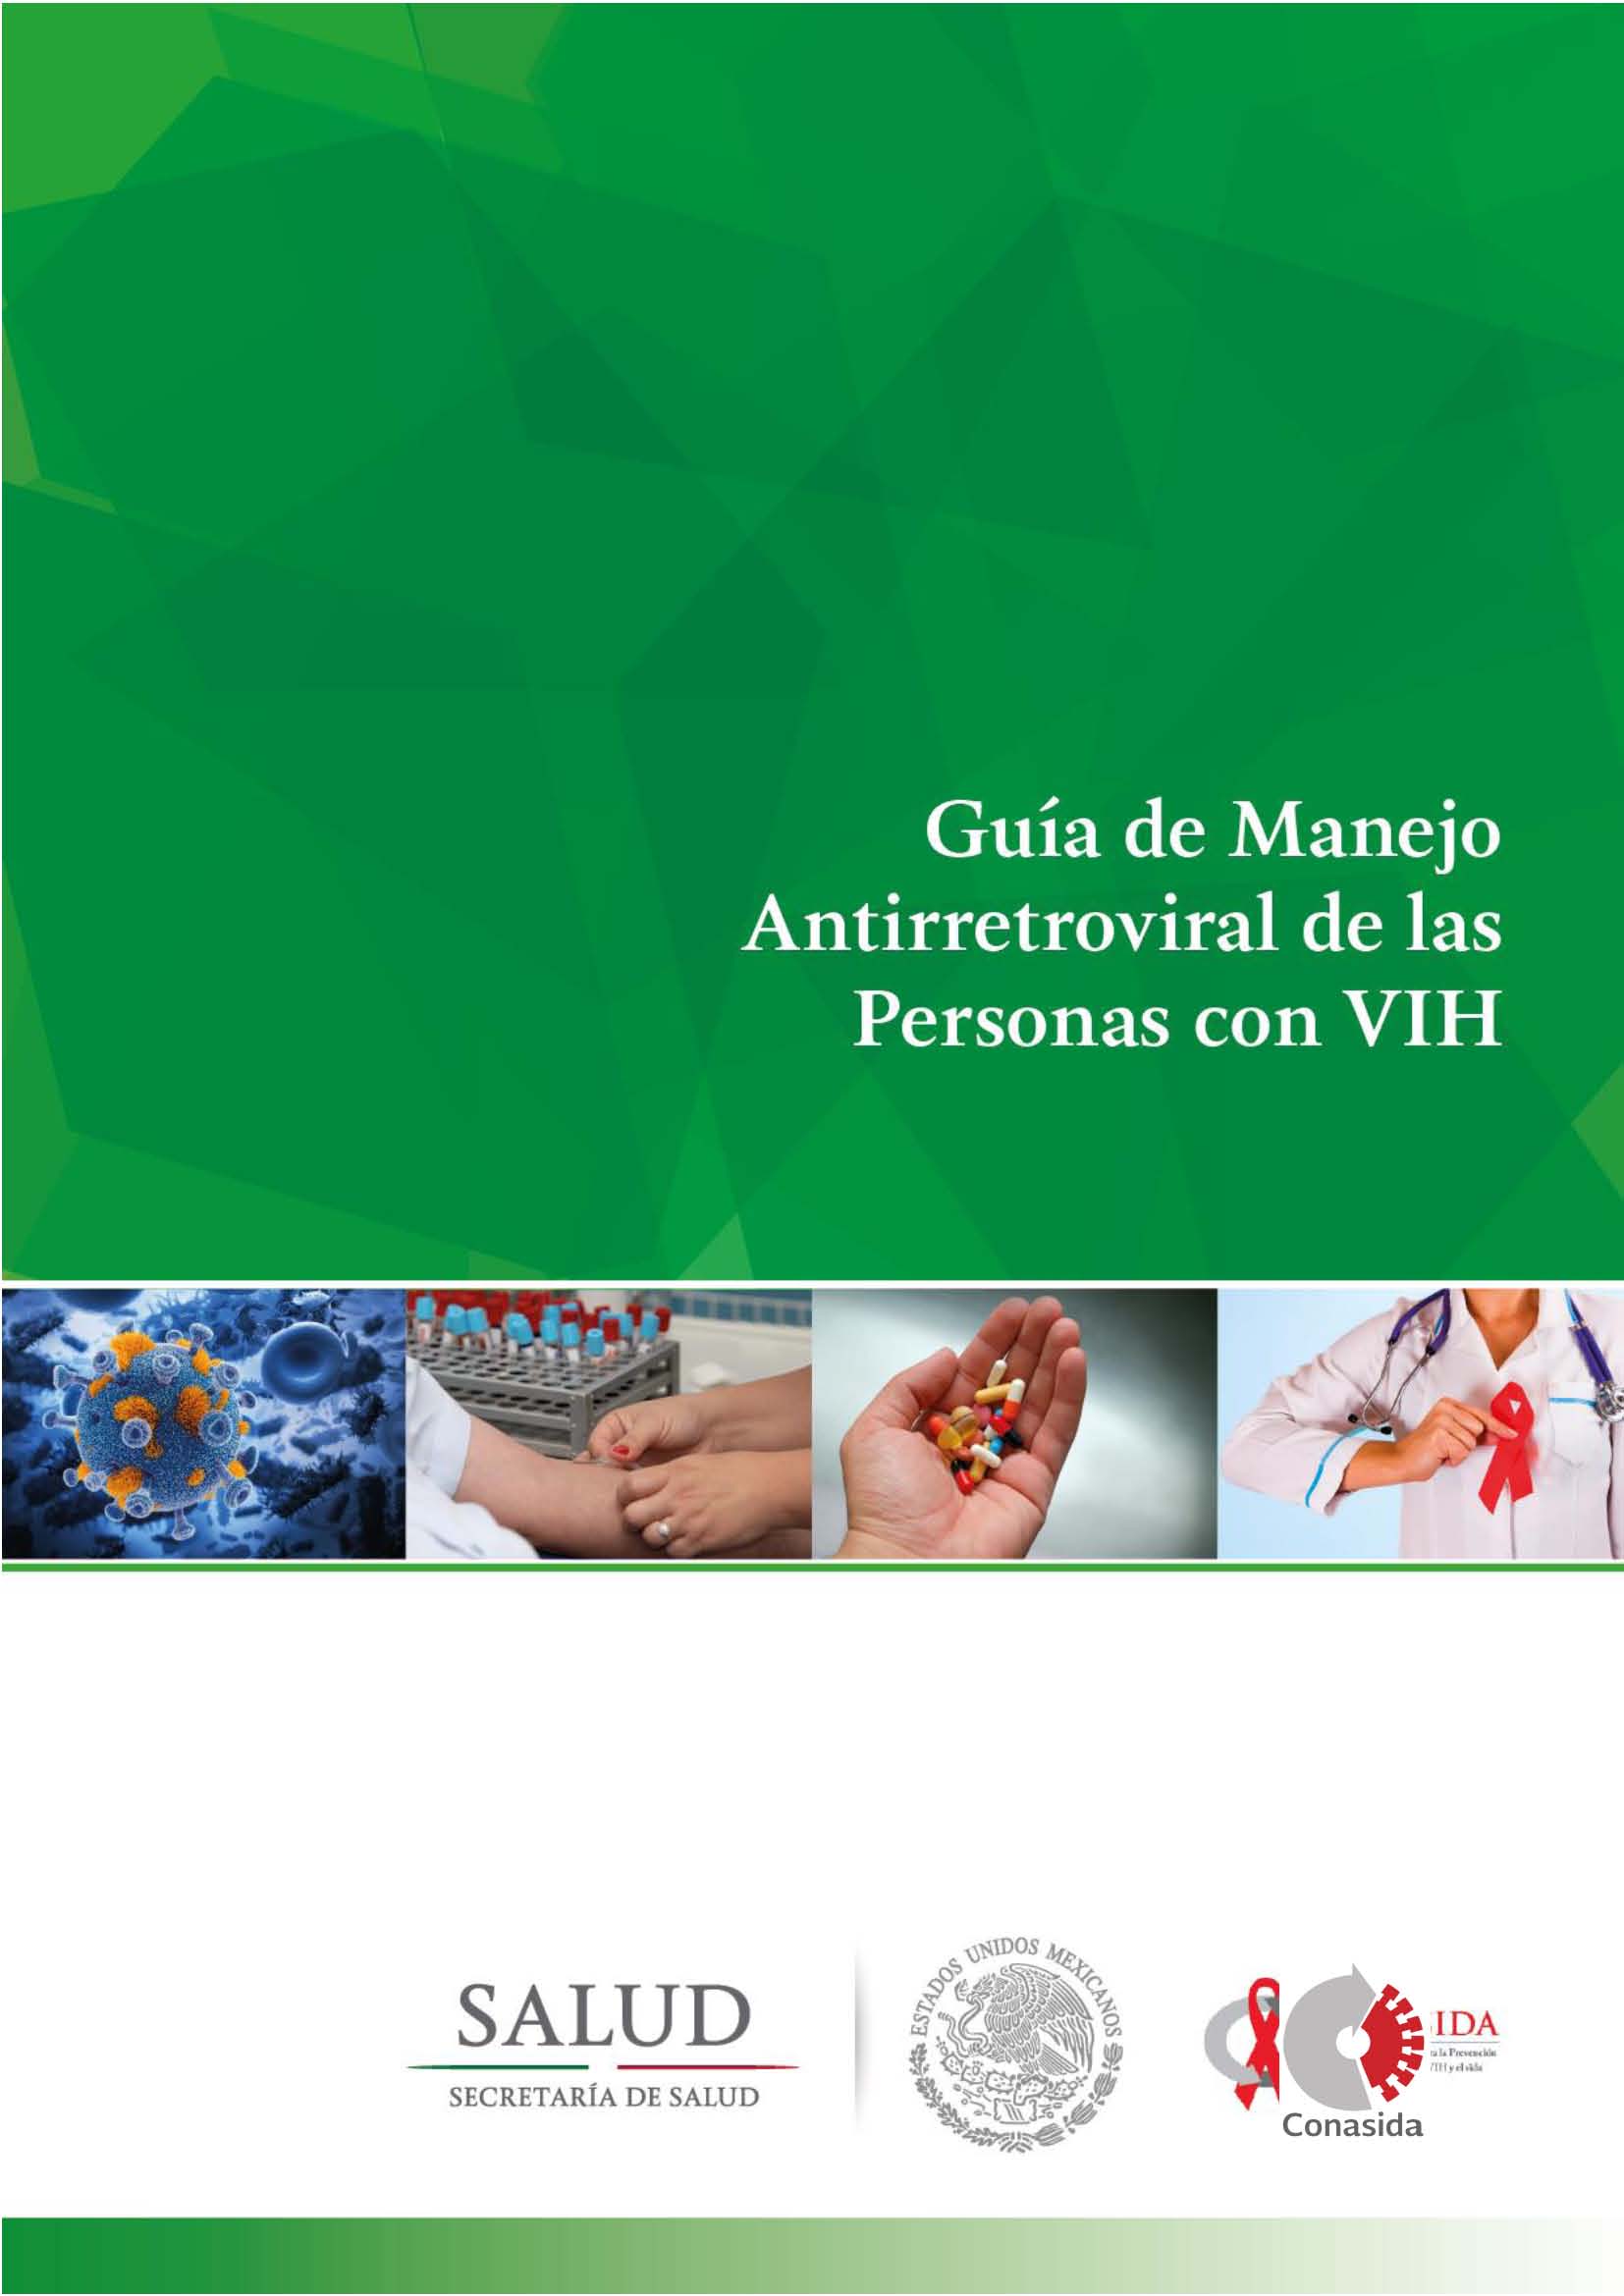 Guía de manejo antirretroviral de las personas con VIH